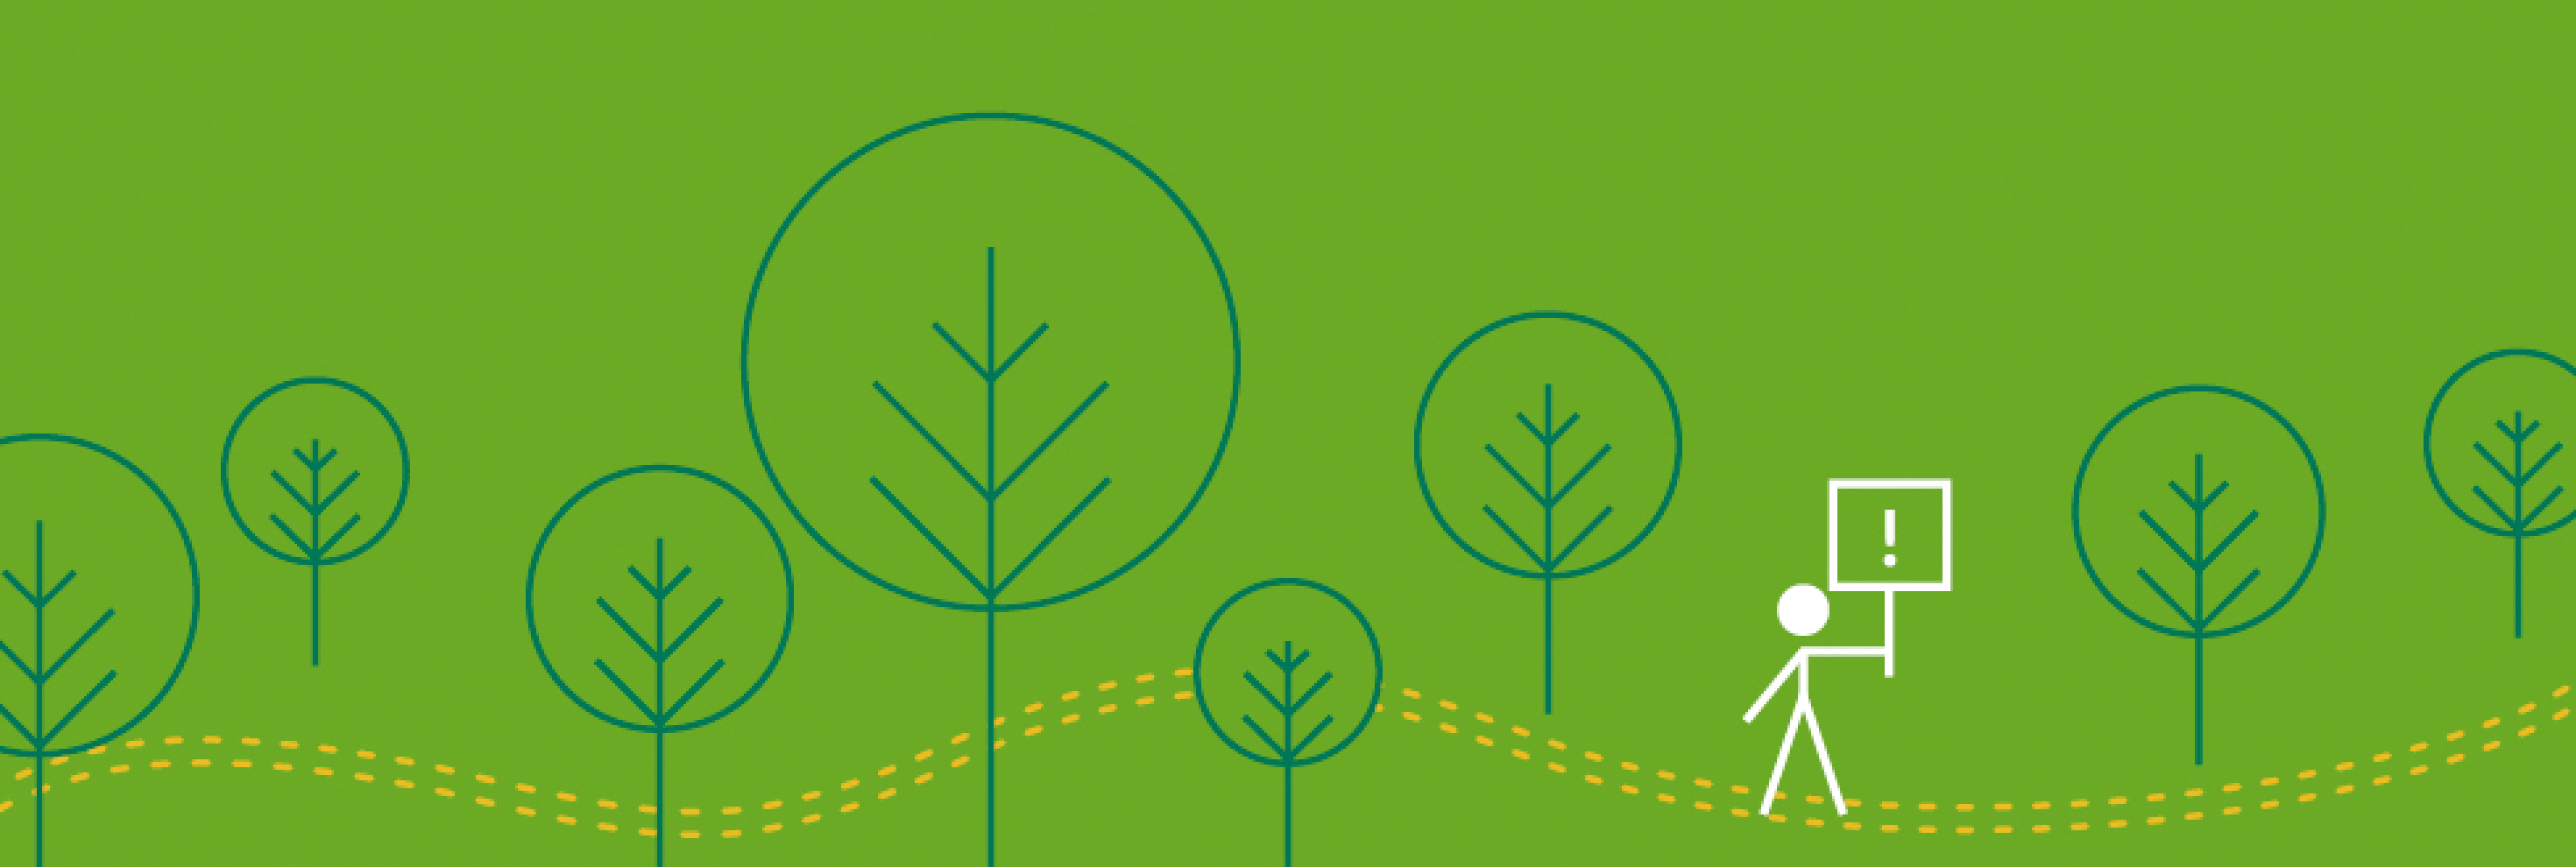 Headerbild mit stilisierten Bäumen und einem Strichmännchen, das ein Schild mit Ausrufezeichen trägt, auf grünem Hintergrund